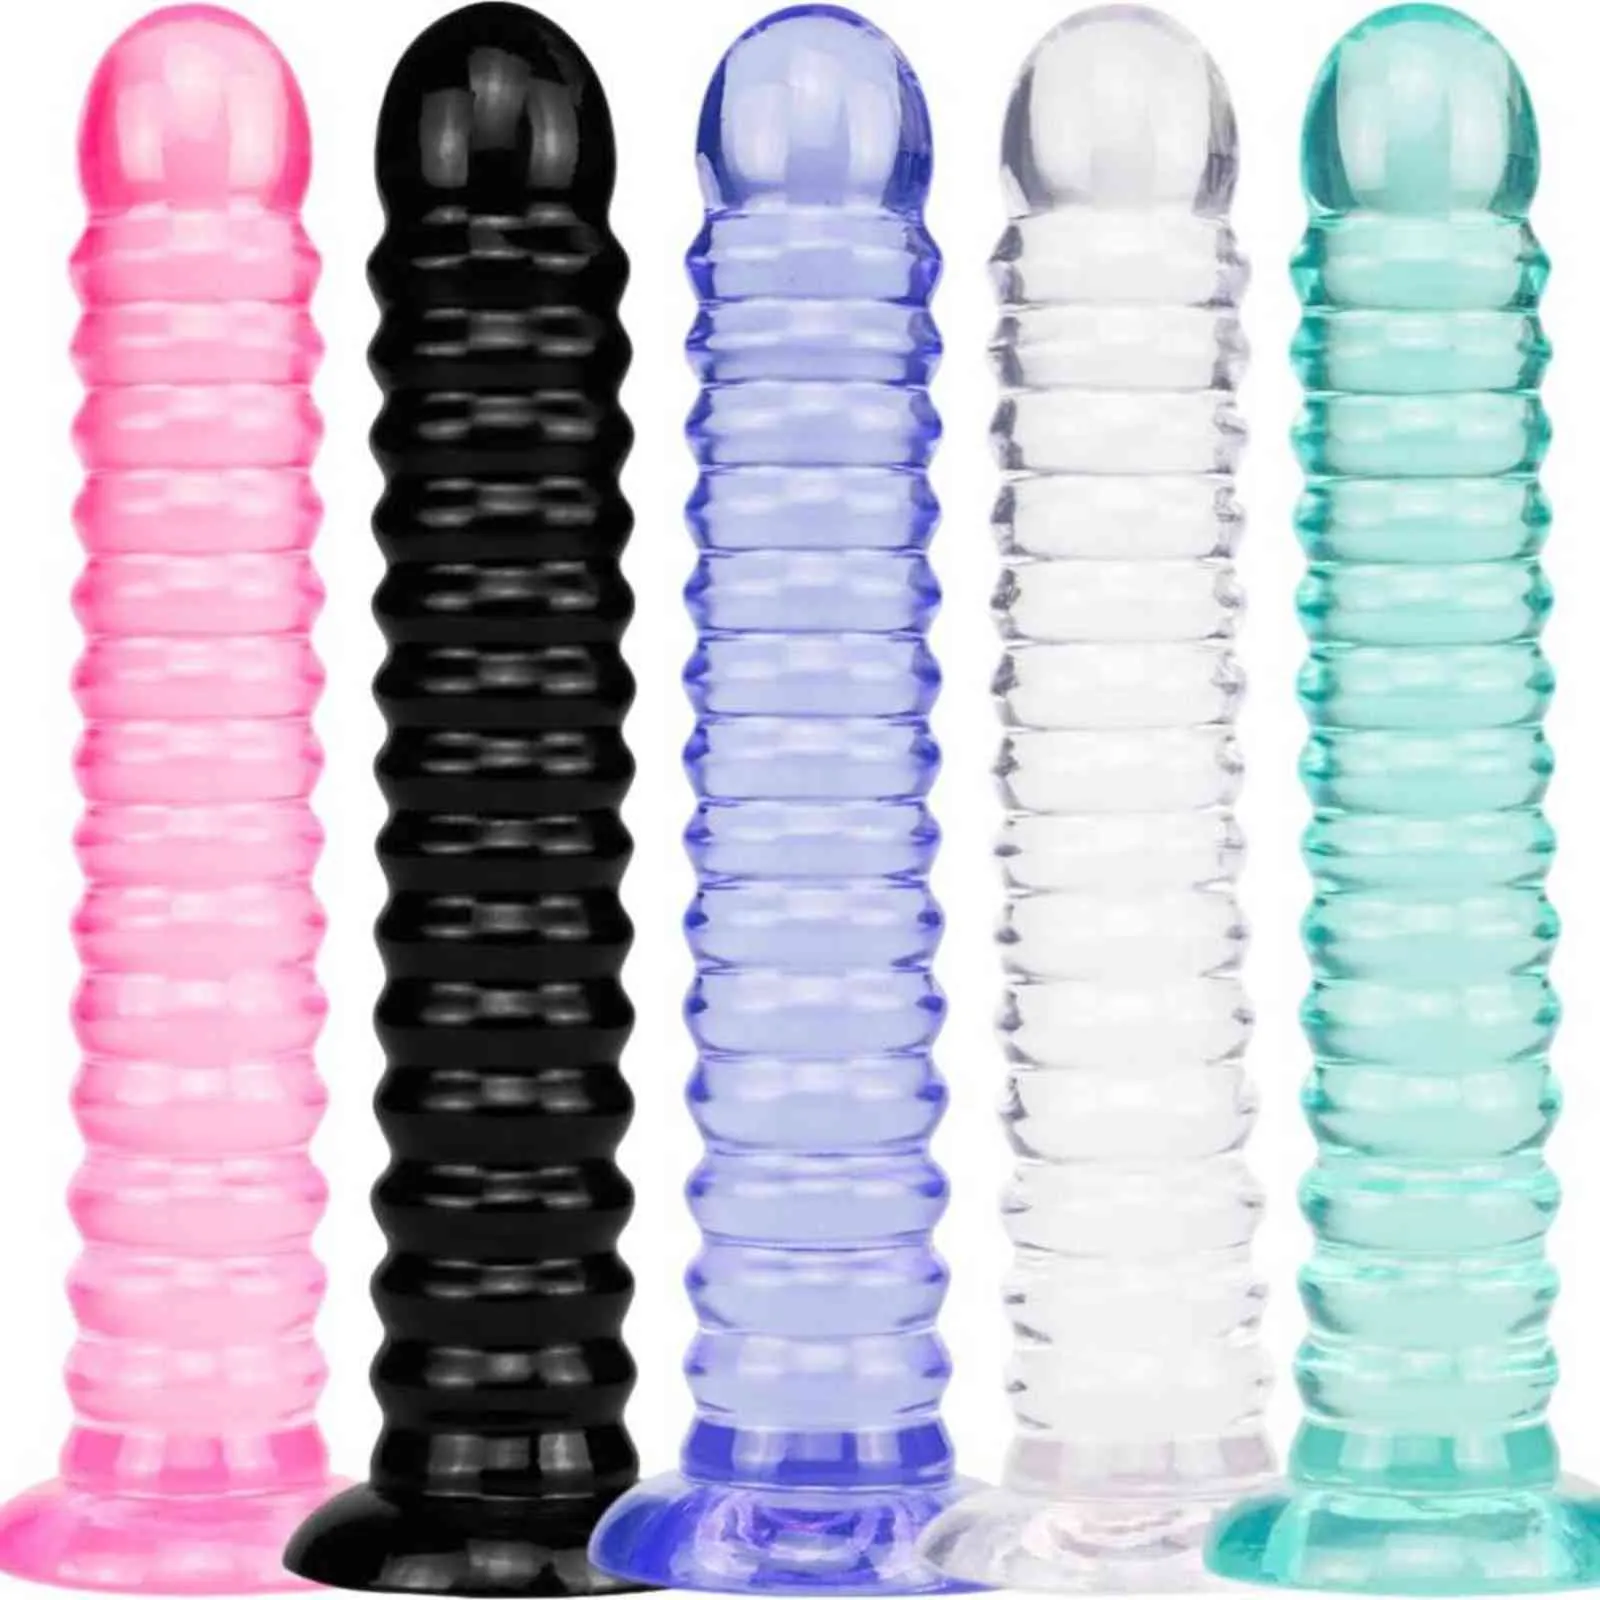 NXY Cockring Giocattoli del sesso anale 5 Style Jelly Dildo con ventosa Enormi dildo per donna Uomo Fake Dick Butt Plug Negozio erotico 1123 1124